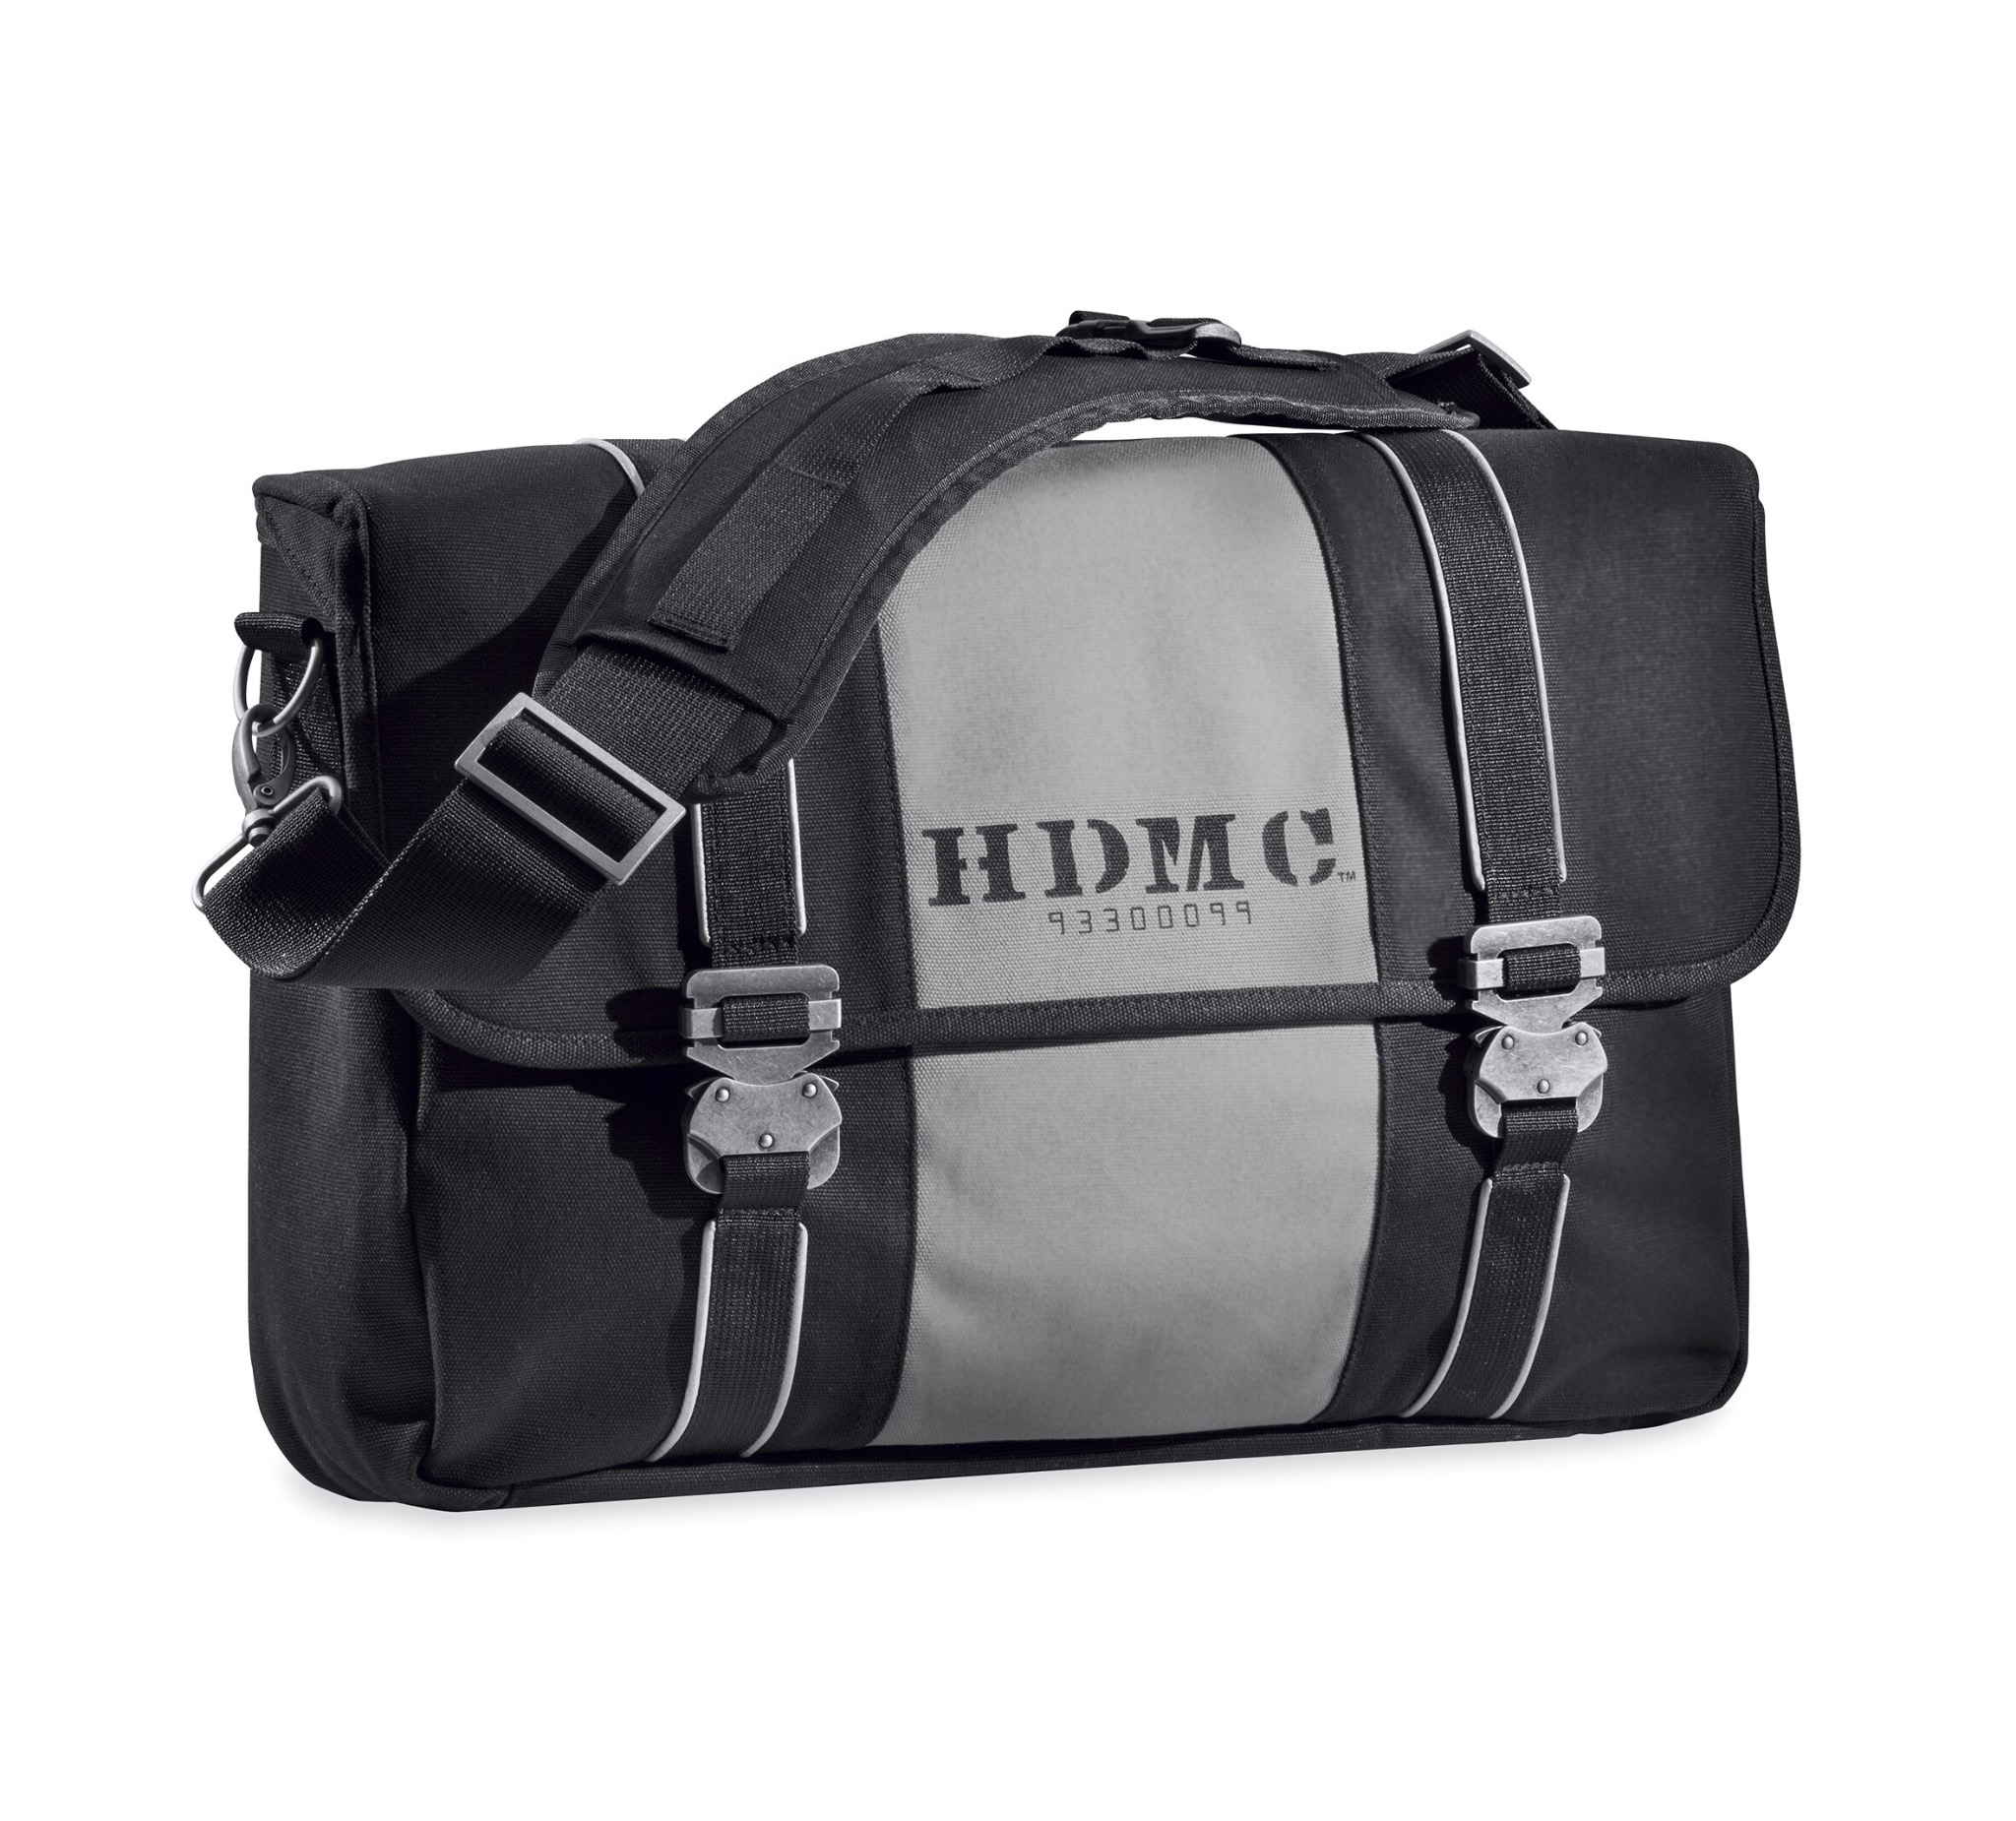 HARLEY DAVIDSON One-shoulder Bag Black, Bags